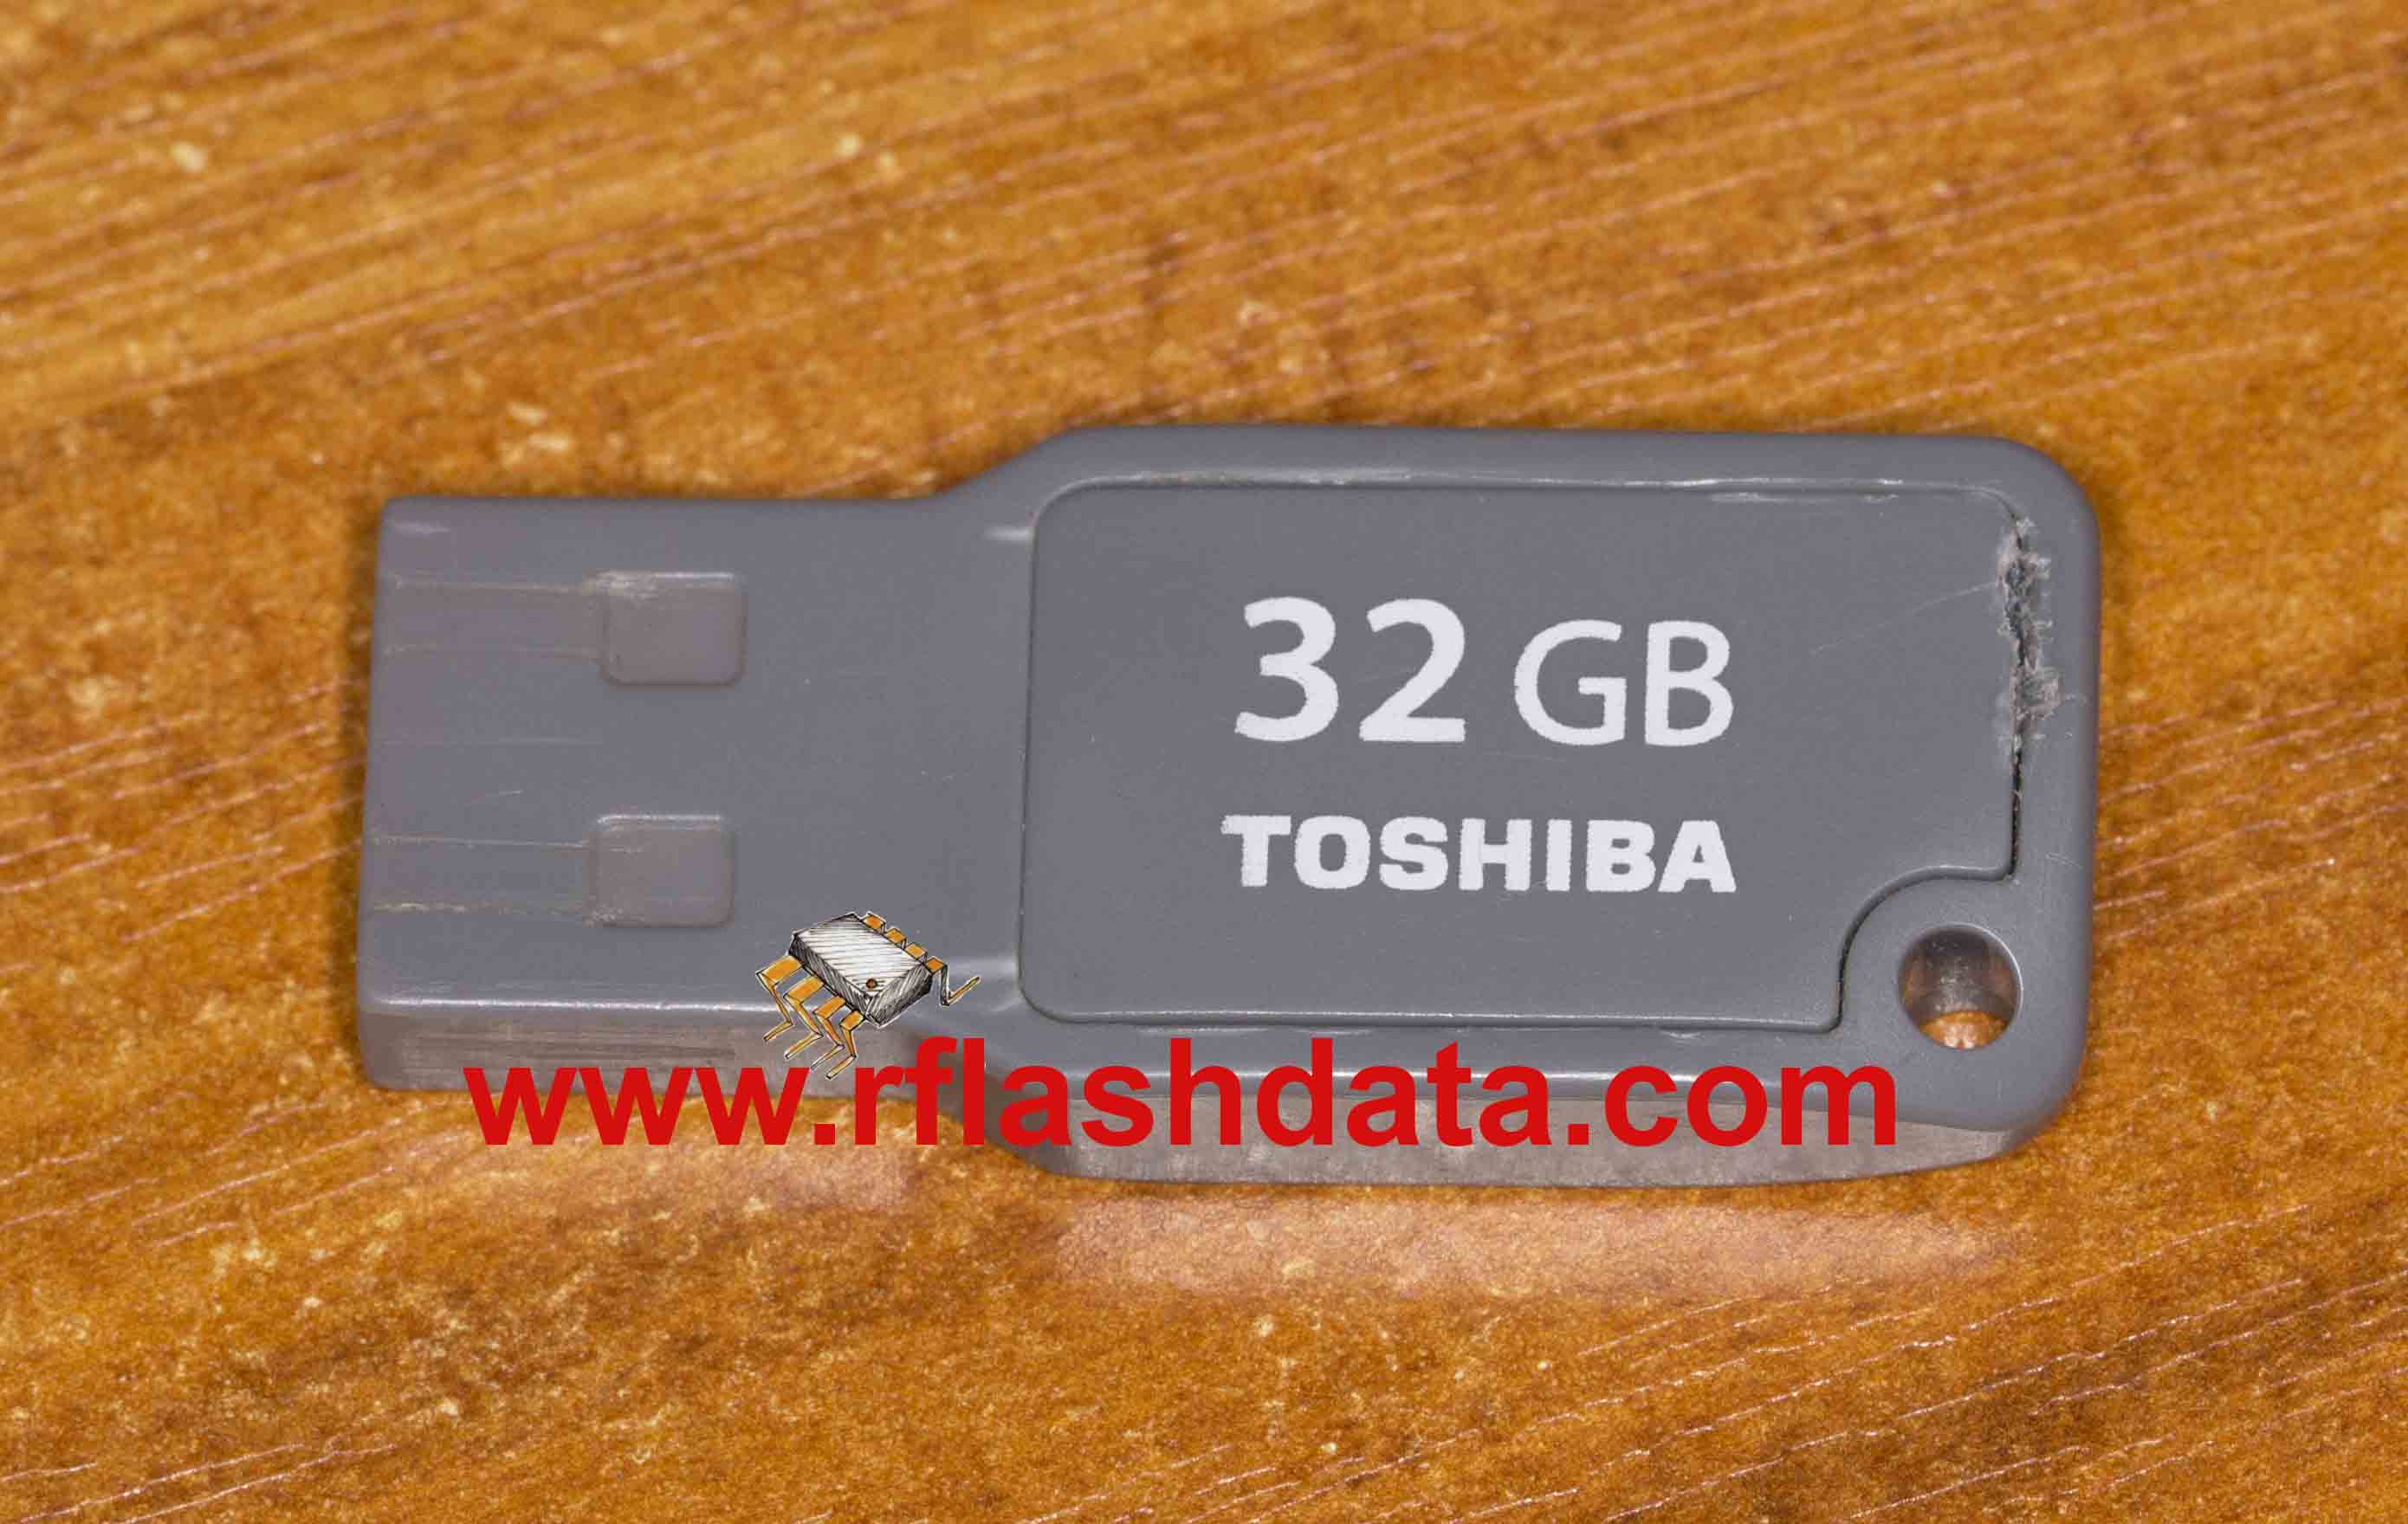 Toshiba memory card data recovery